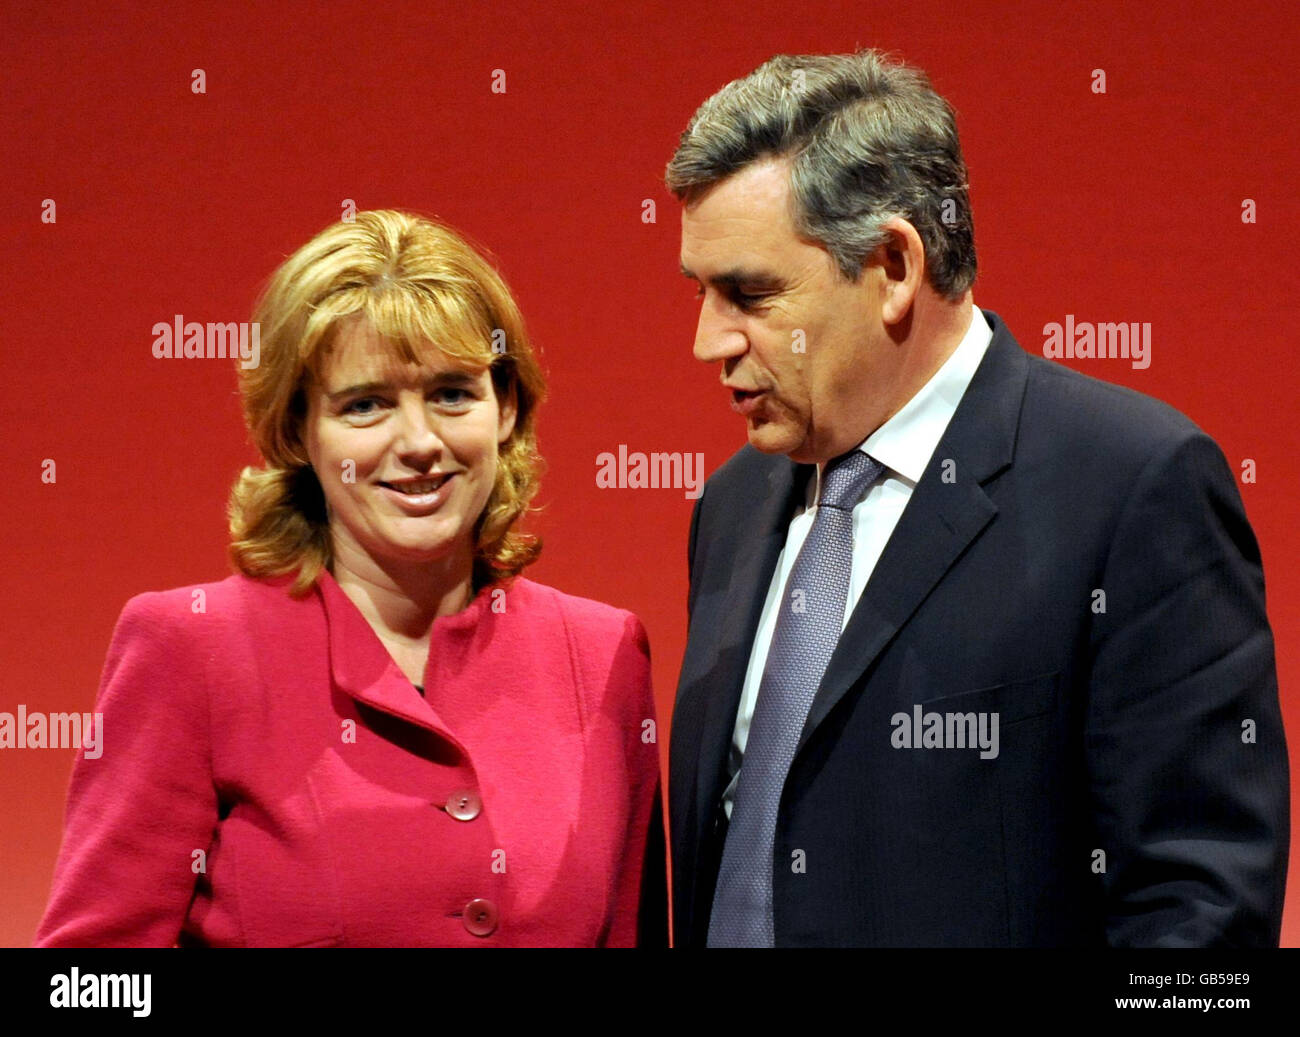 Die jährliche Konferenz der Labour Party. Verkehrsministerin Ruth Kelly und Premierminister Gordon Brown bei der Konferenz der Labour Party in Manchester. Stockfoto